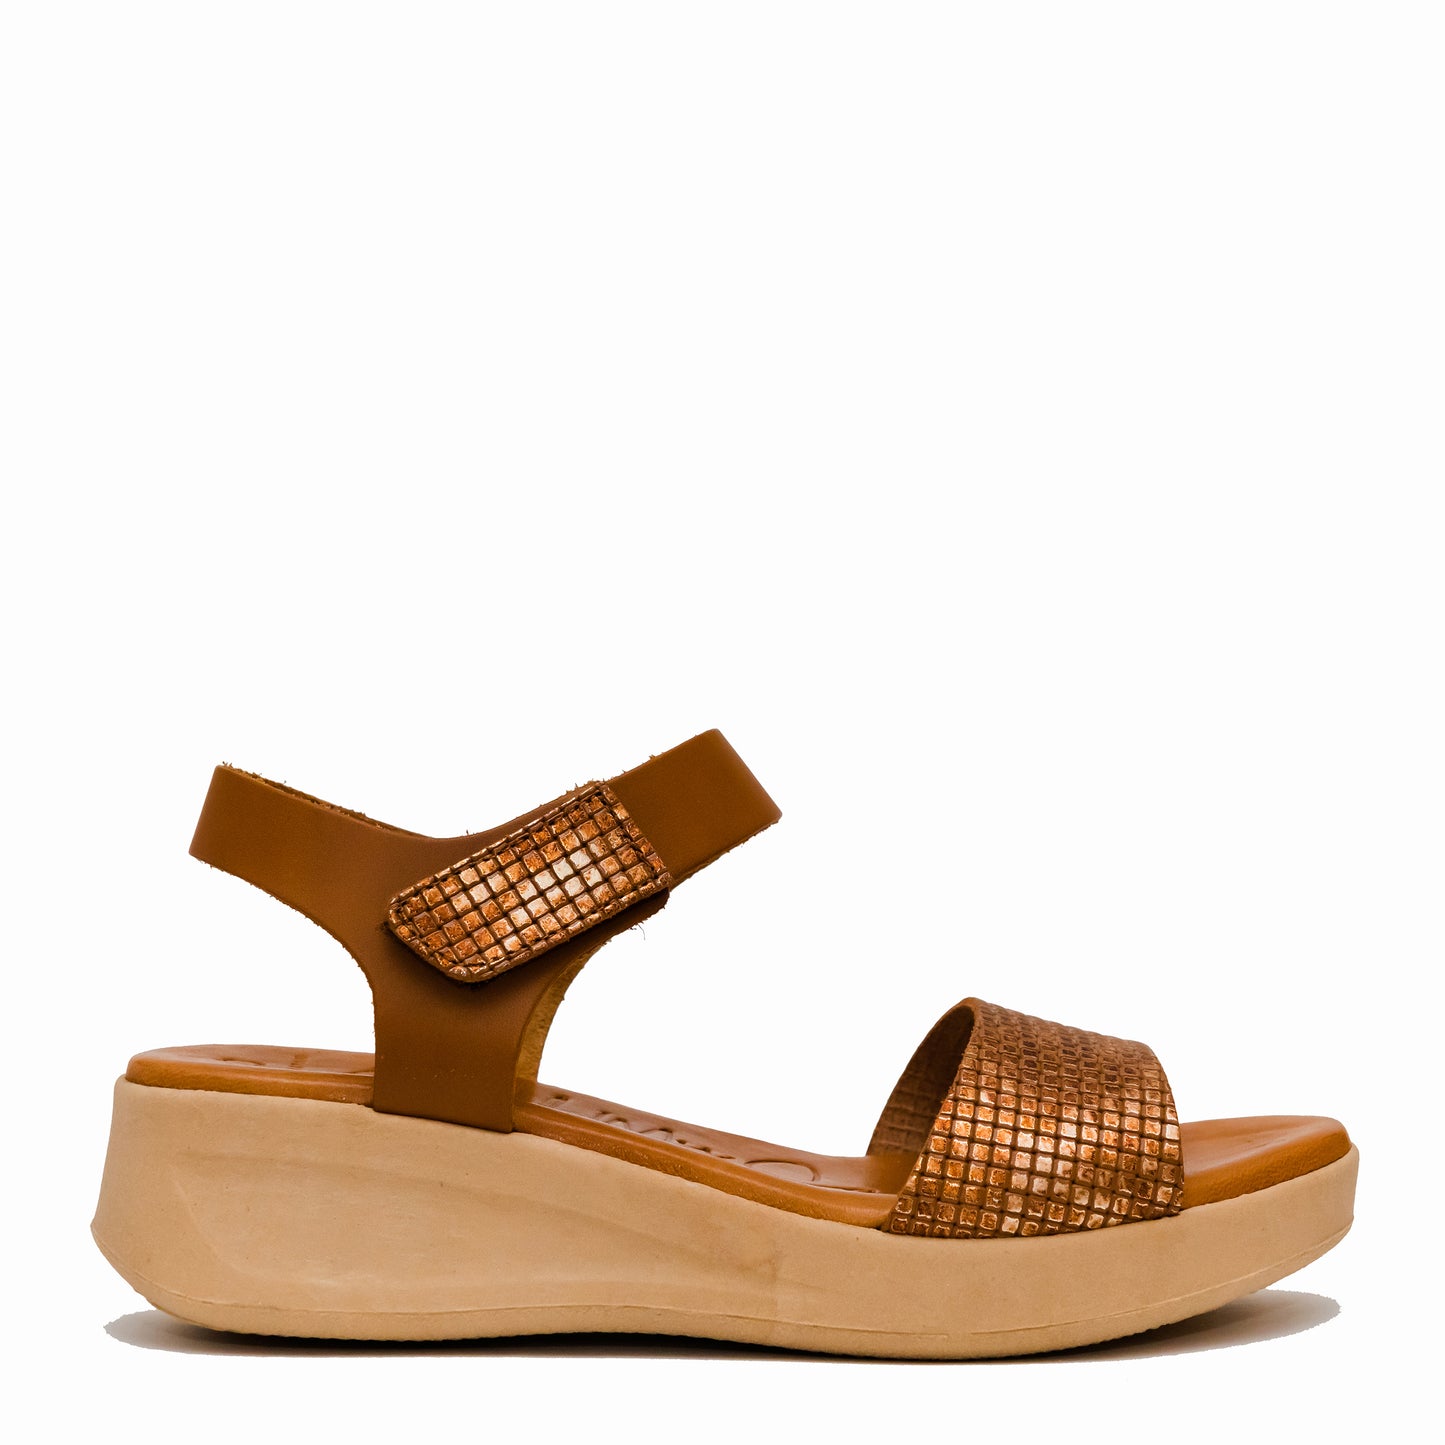 Oh My Sandals 5187 Tan Bronze Combi Velcro Sandals